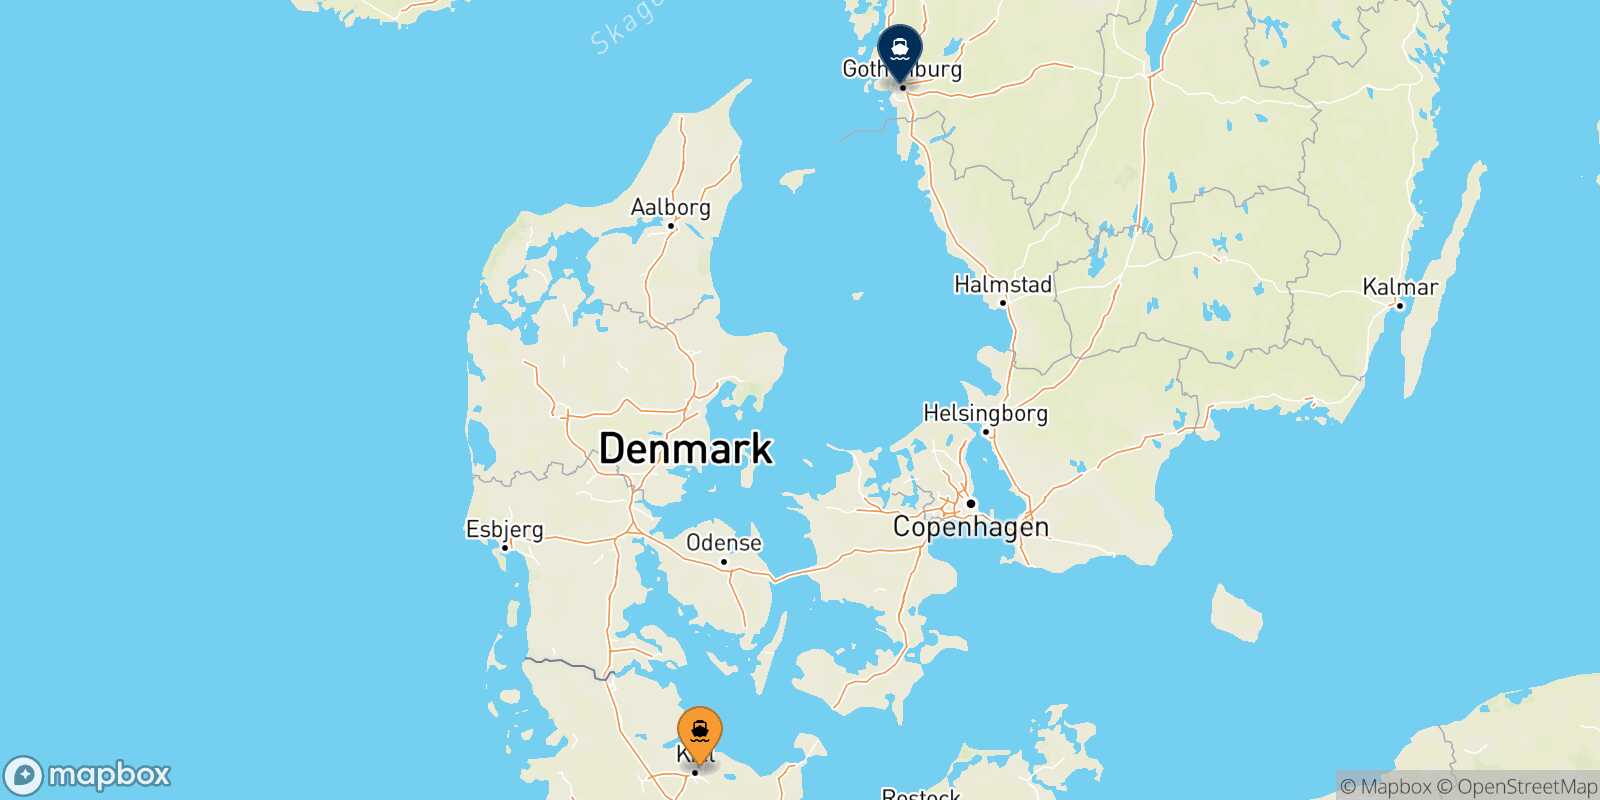 Kiel Gothenburg route map